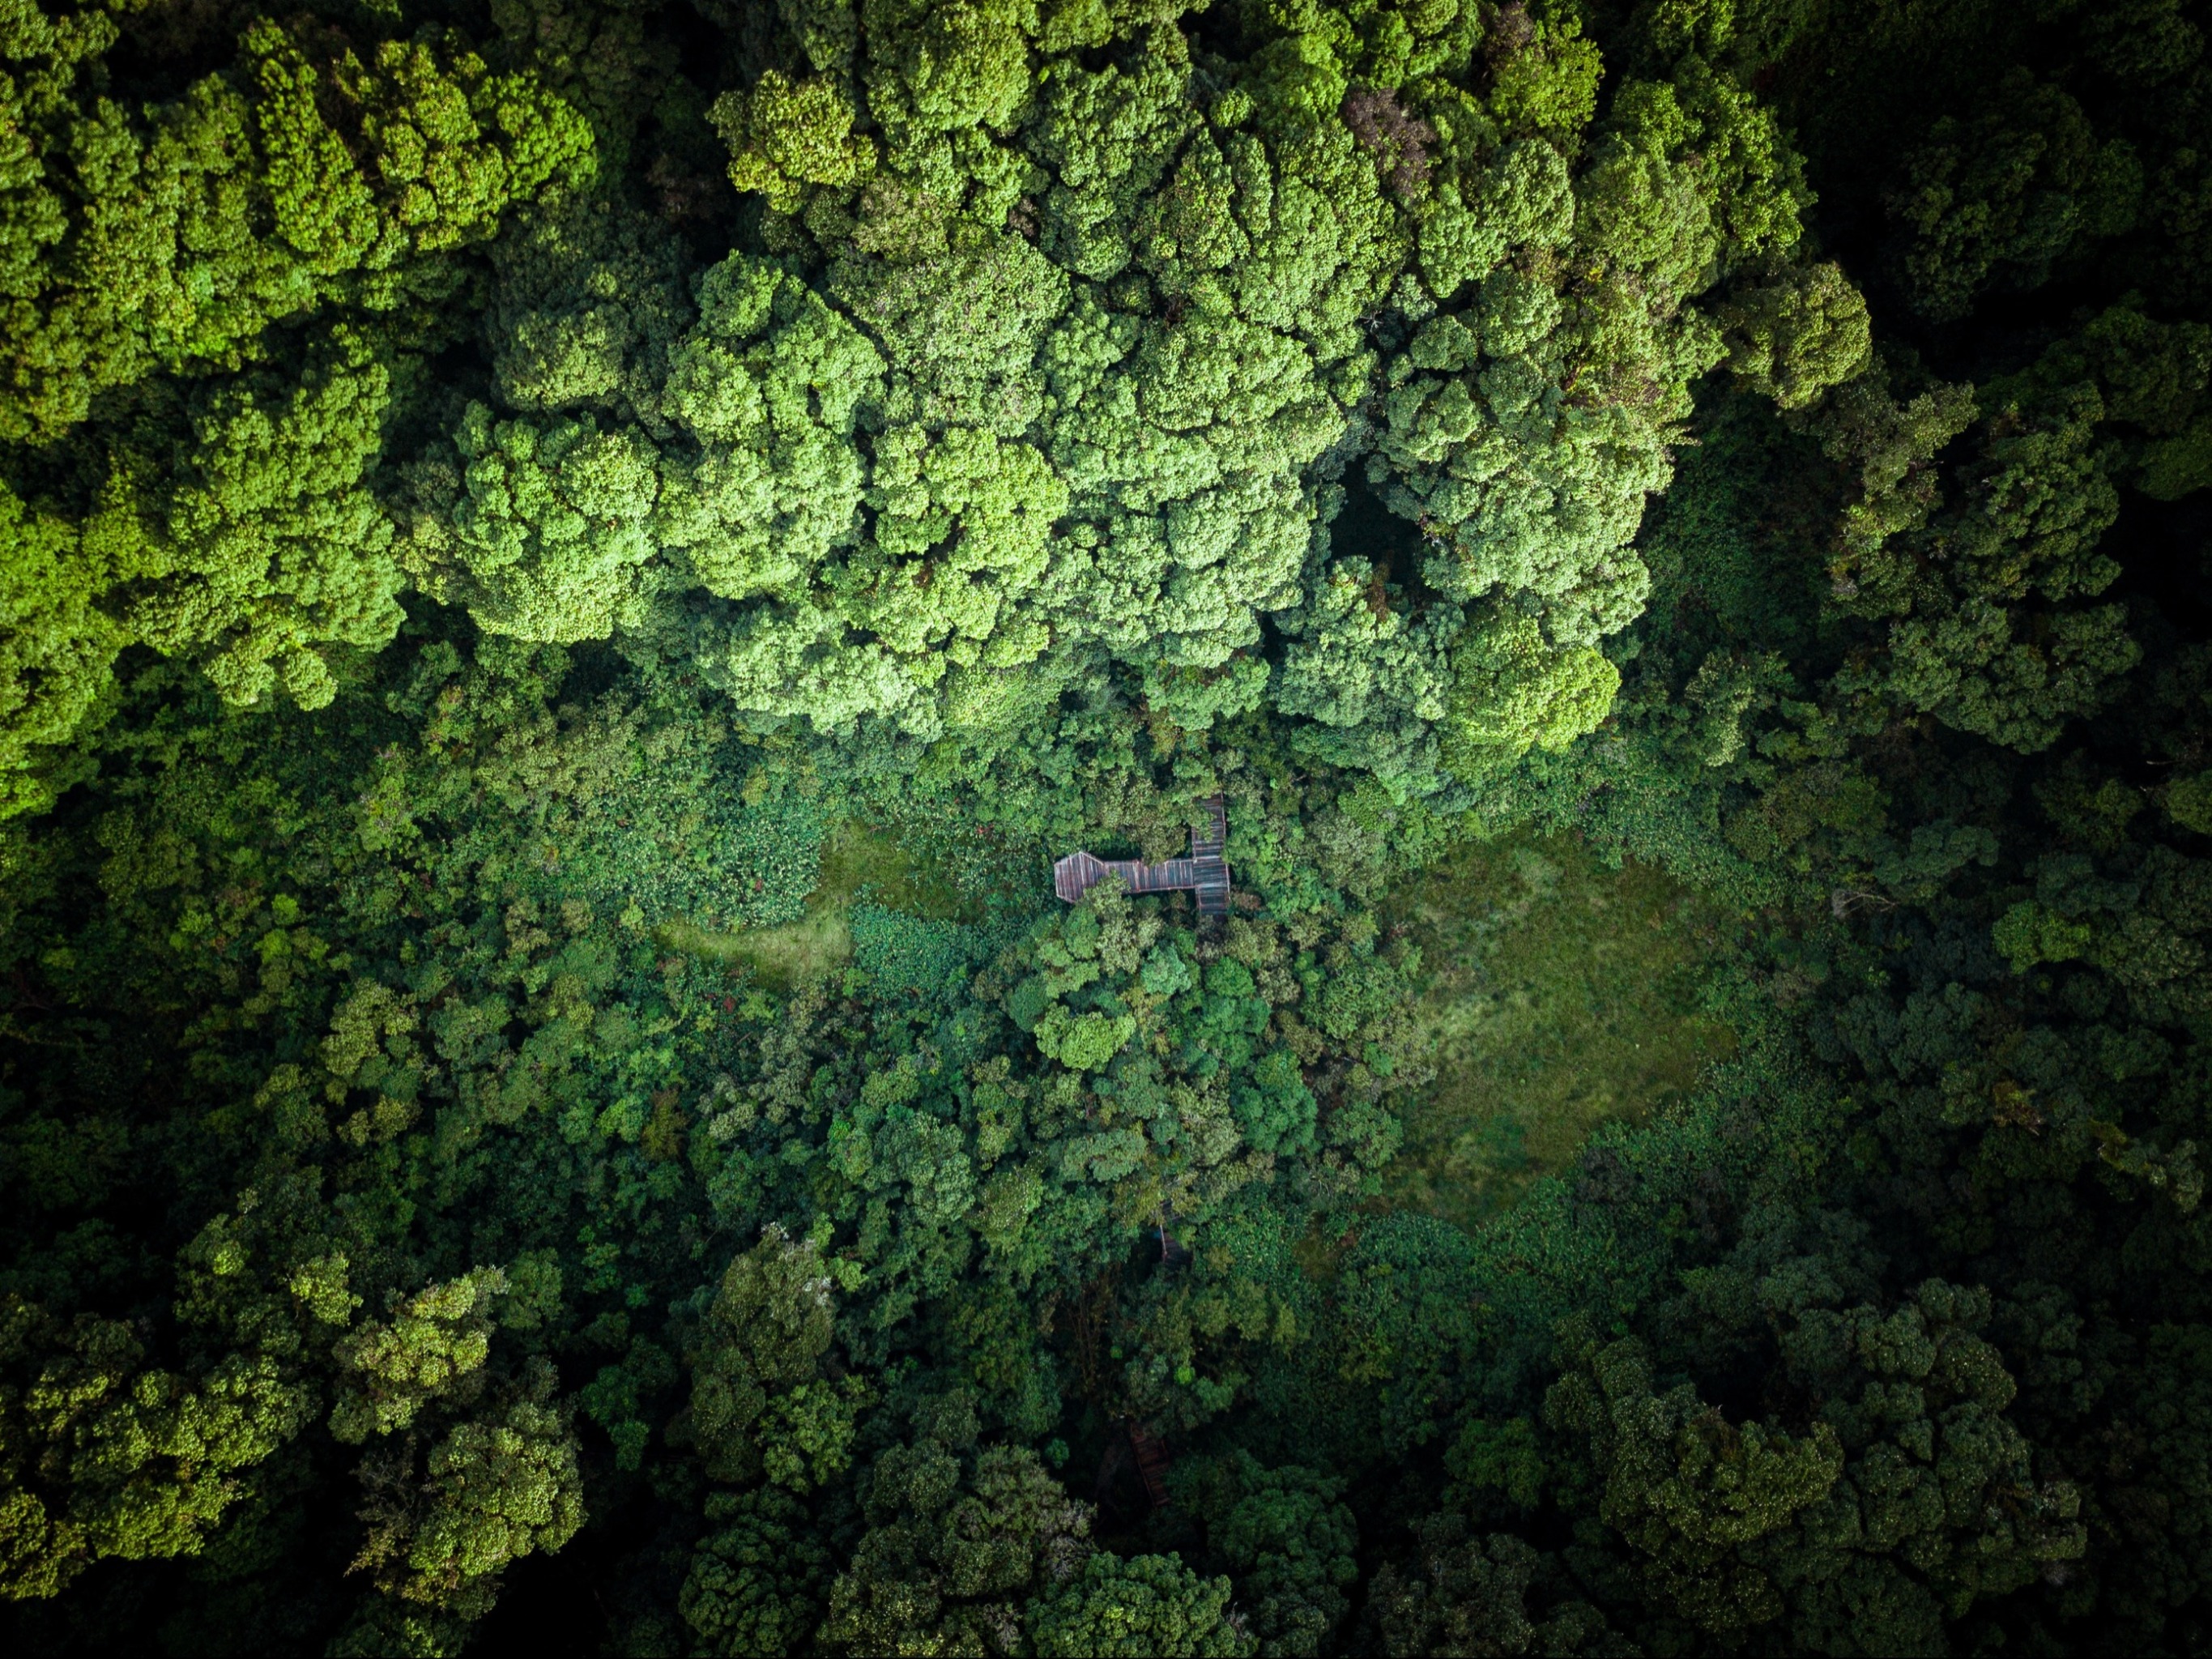 ชวนไปเดินศึกษาความหลากหลายของชีวิตในผืนป่าดึกดำบรรพ์ เส้นทางศึกษาธรรมชาติอ่างกา ดอยอินทนนท์